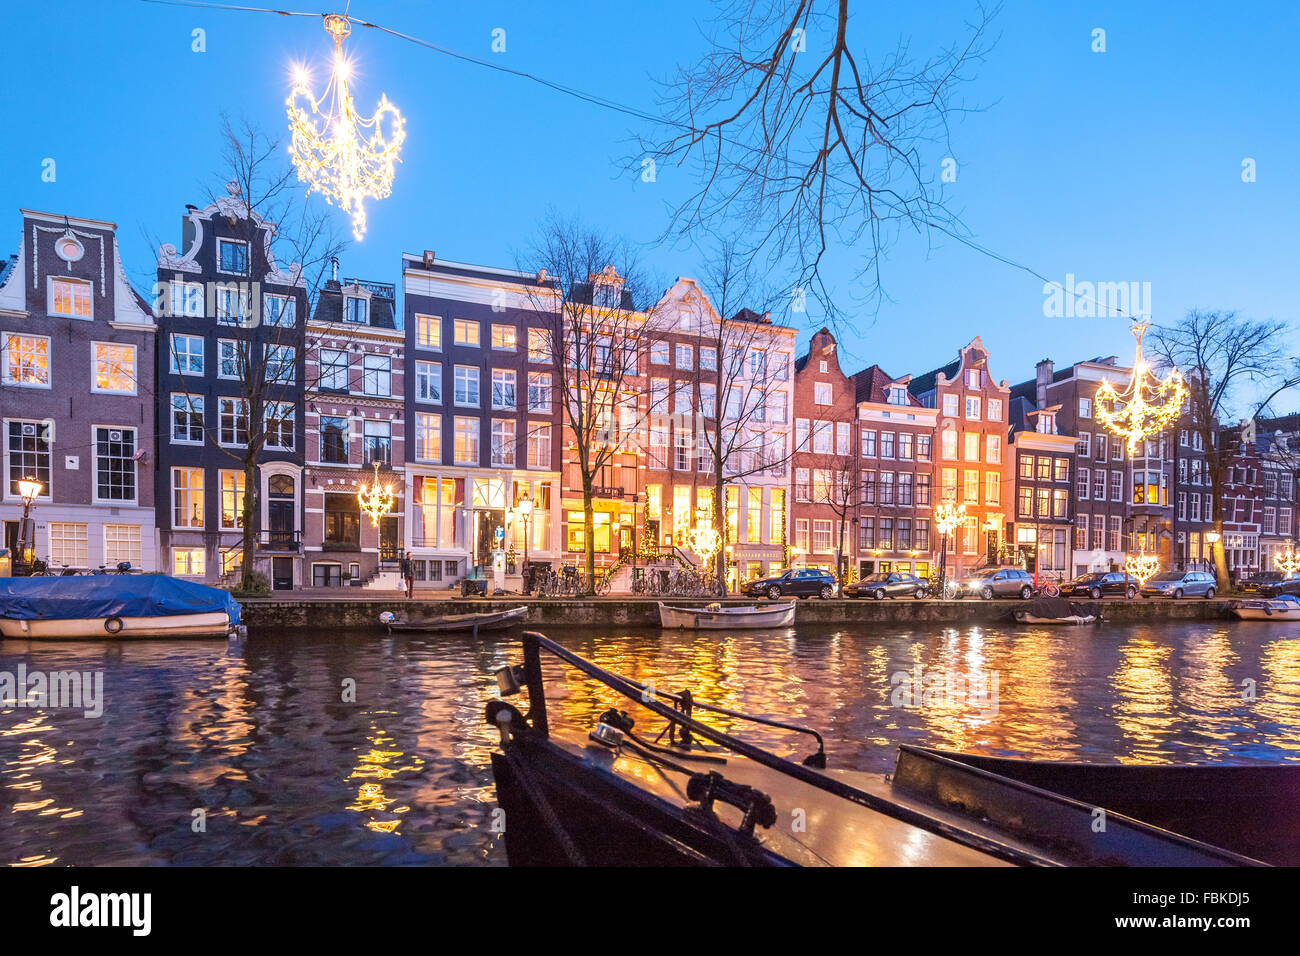 Das Ambassade Hotel auf der Amsterdam Herengracht im Winter mit saisonalen Weihnachtsbeleuchtung. Stockfoto